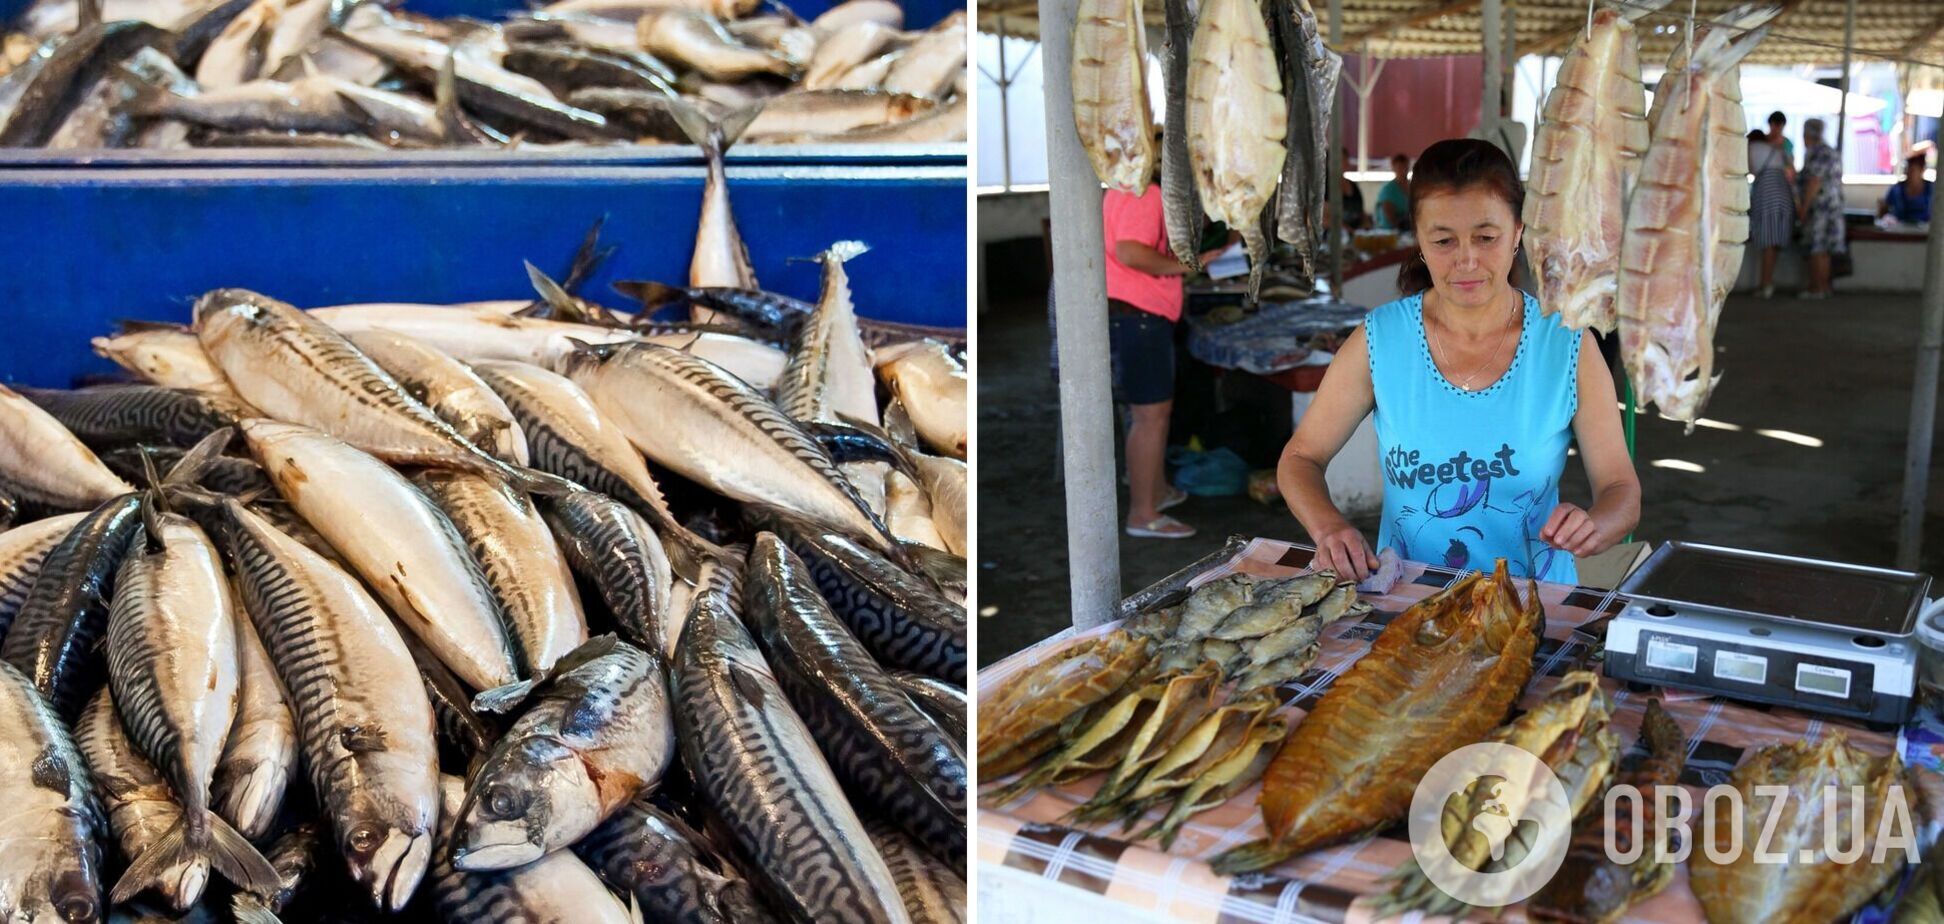 Покупка рыбы летом опасна даже на легальных рынках